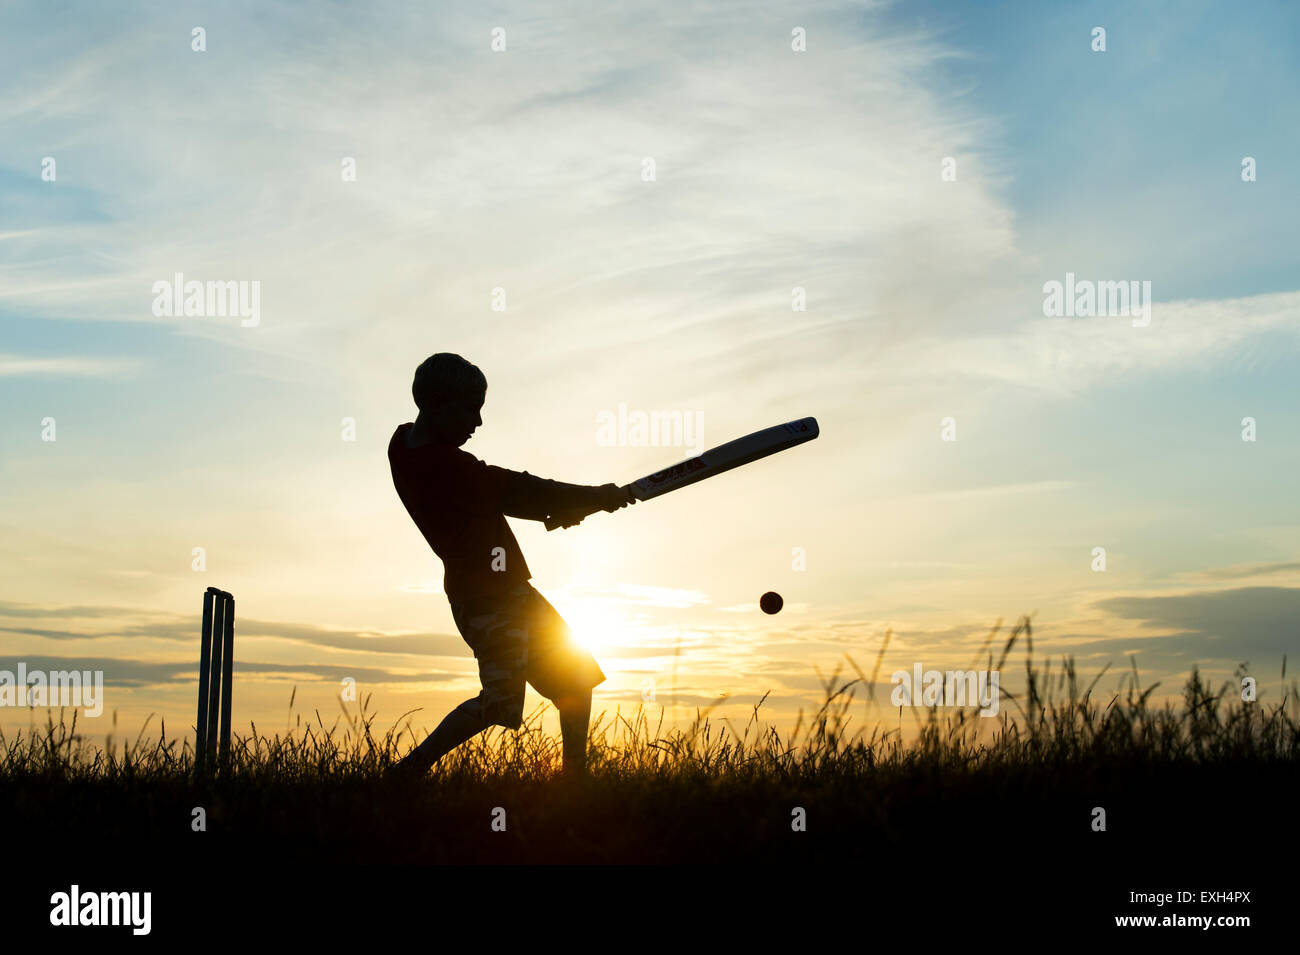 Silhouette de jeune garçon jouer au cricket contre un fond coucher de soleil Banque D'Images